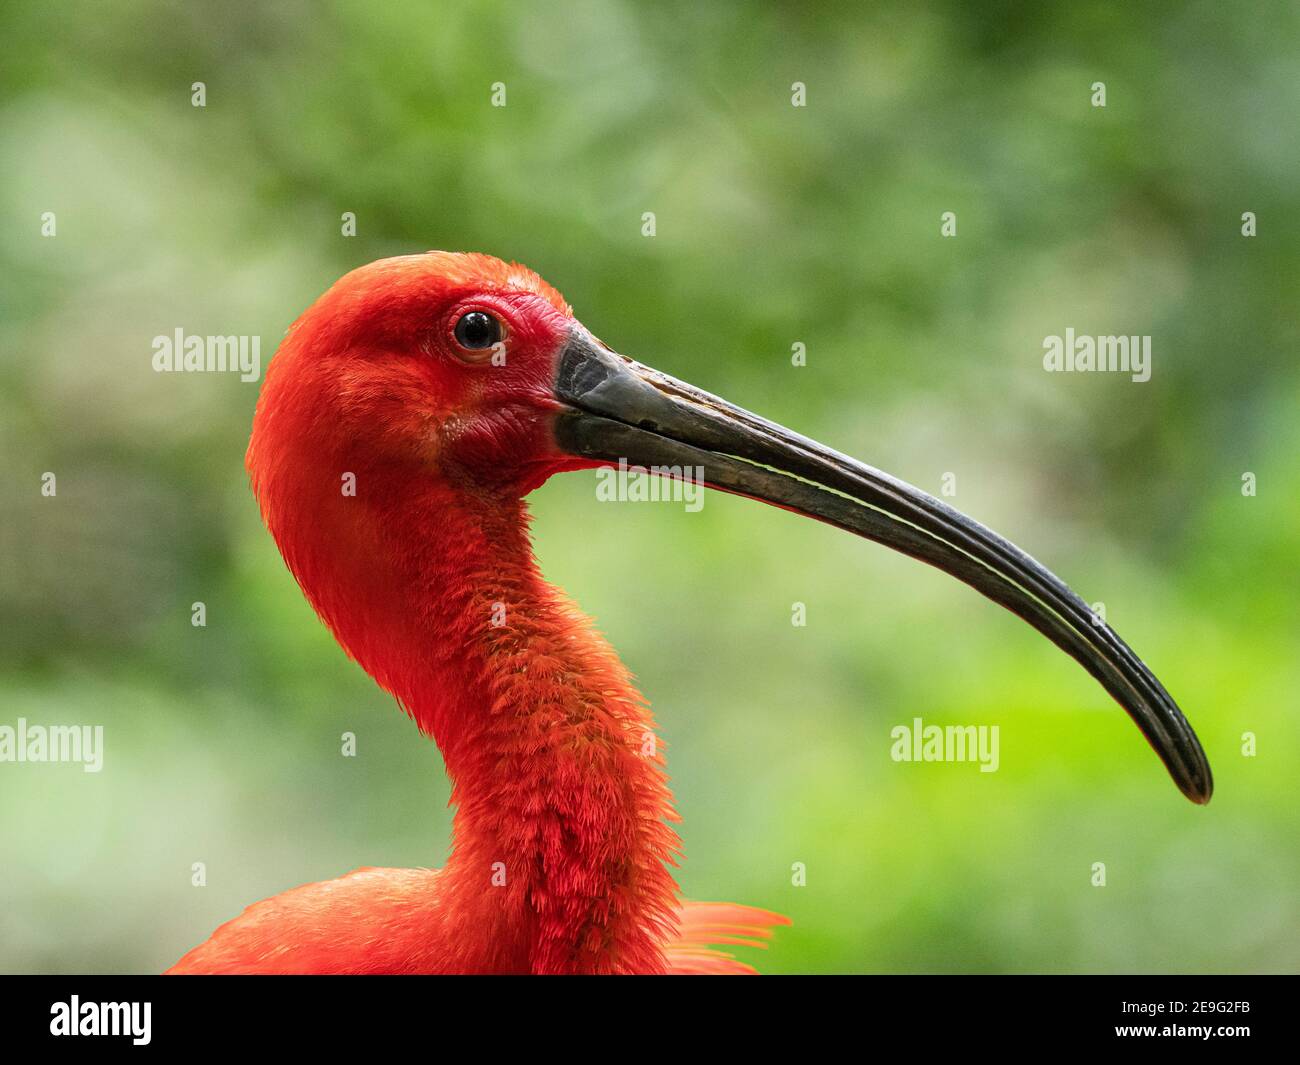 Captive scarlet ibis, Eudocimus ruber, Parque das Aves, Foz do Iguaçu, Paraná State, Brazil. Stock Photo